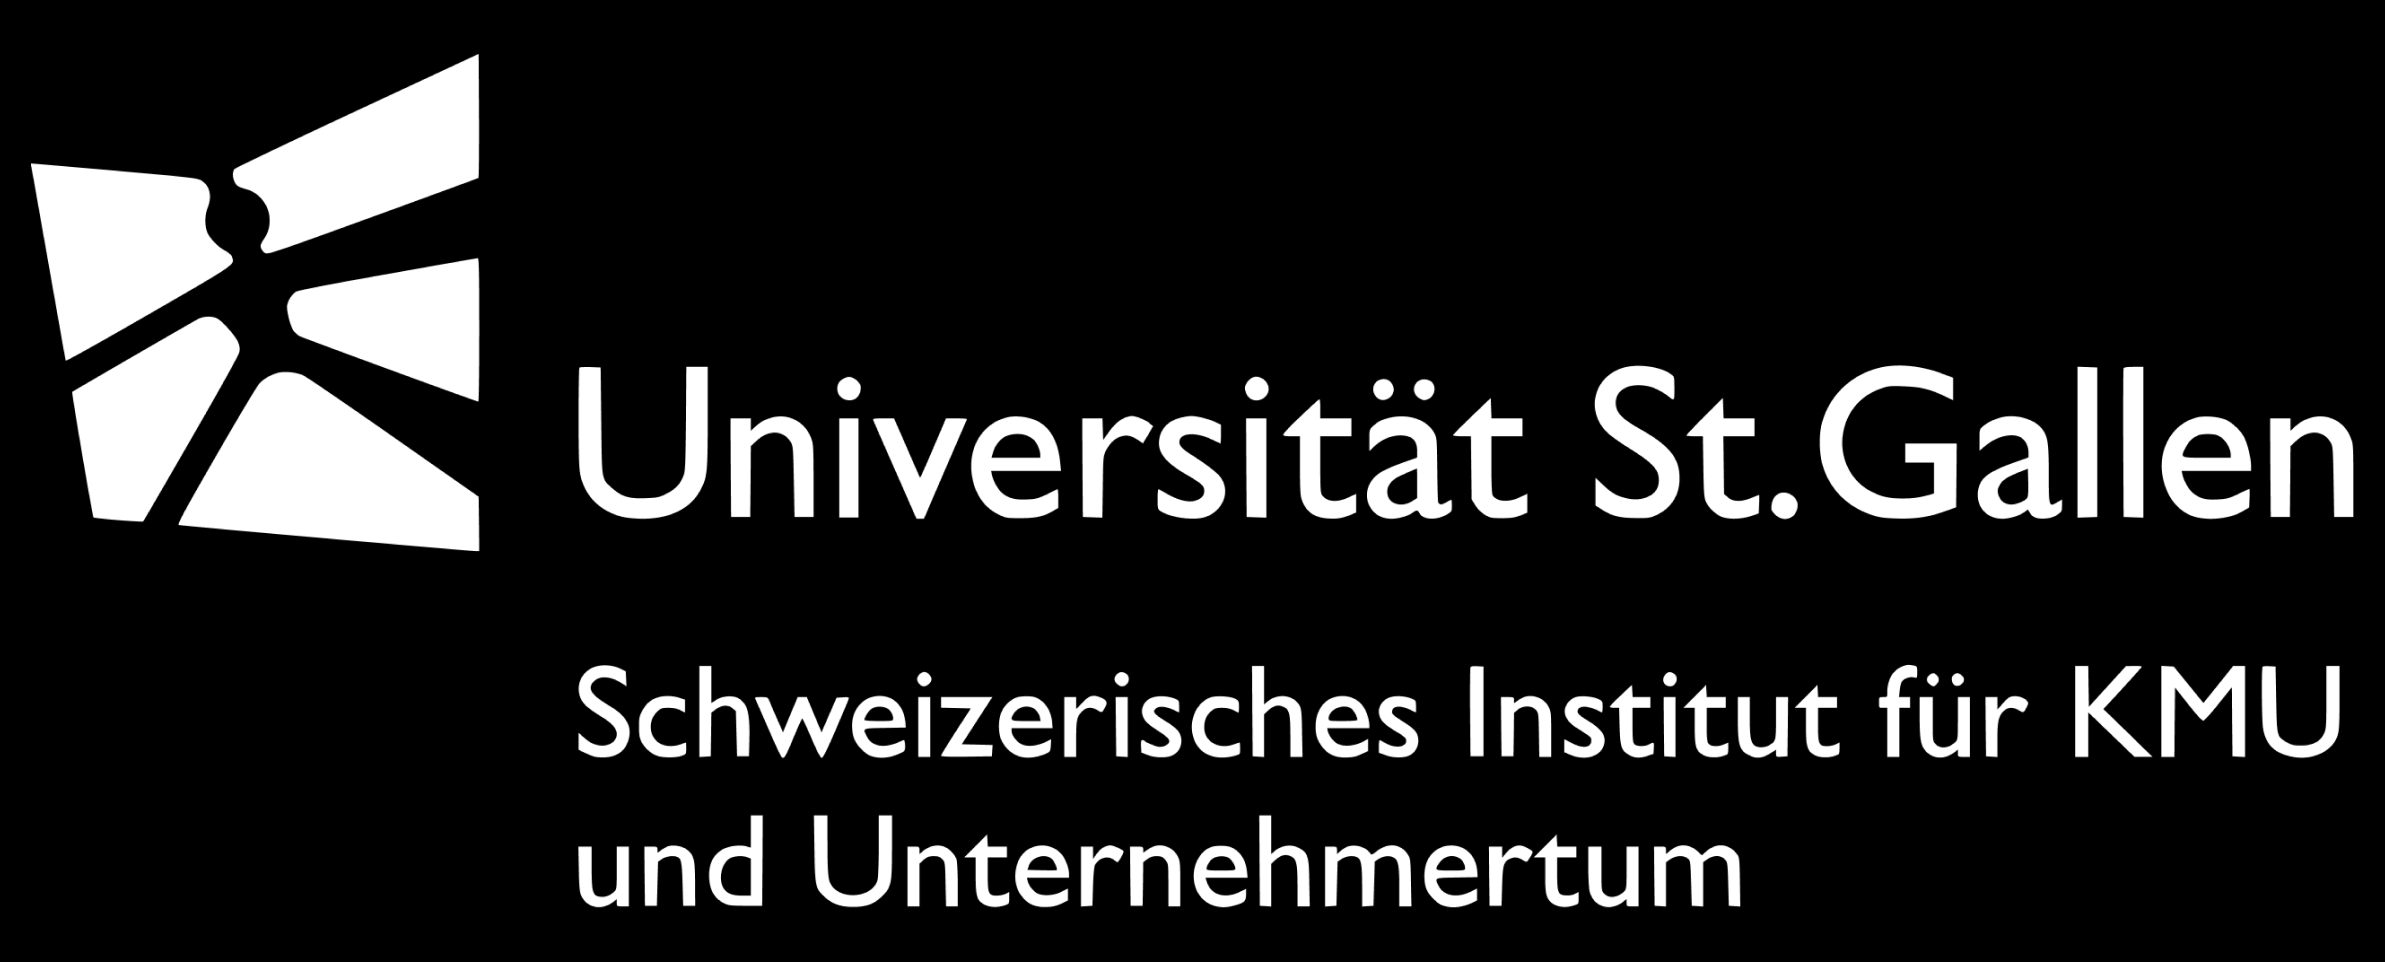 NetworkP Universität St.Gallen KMU